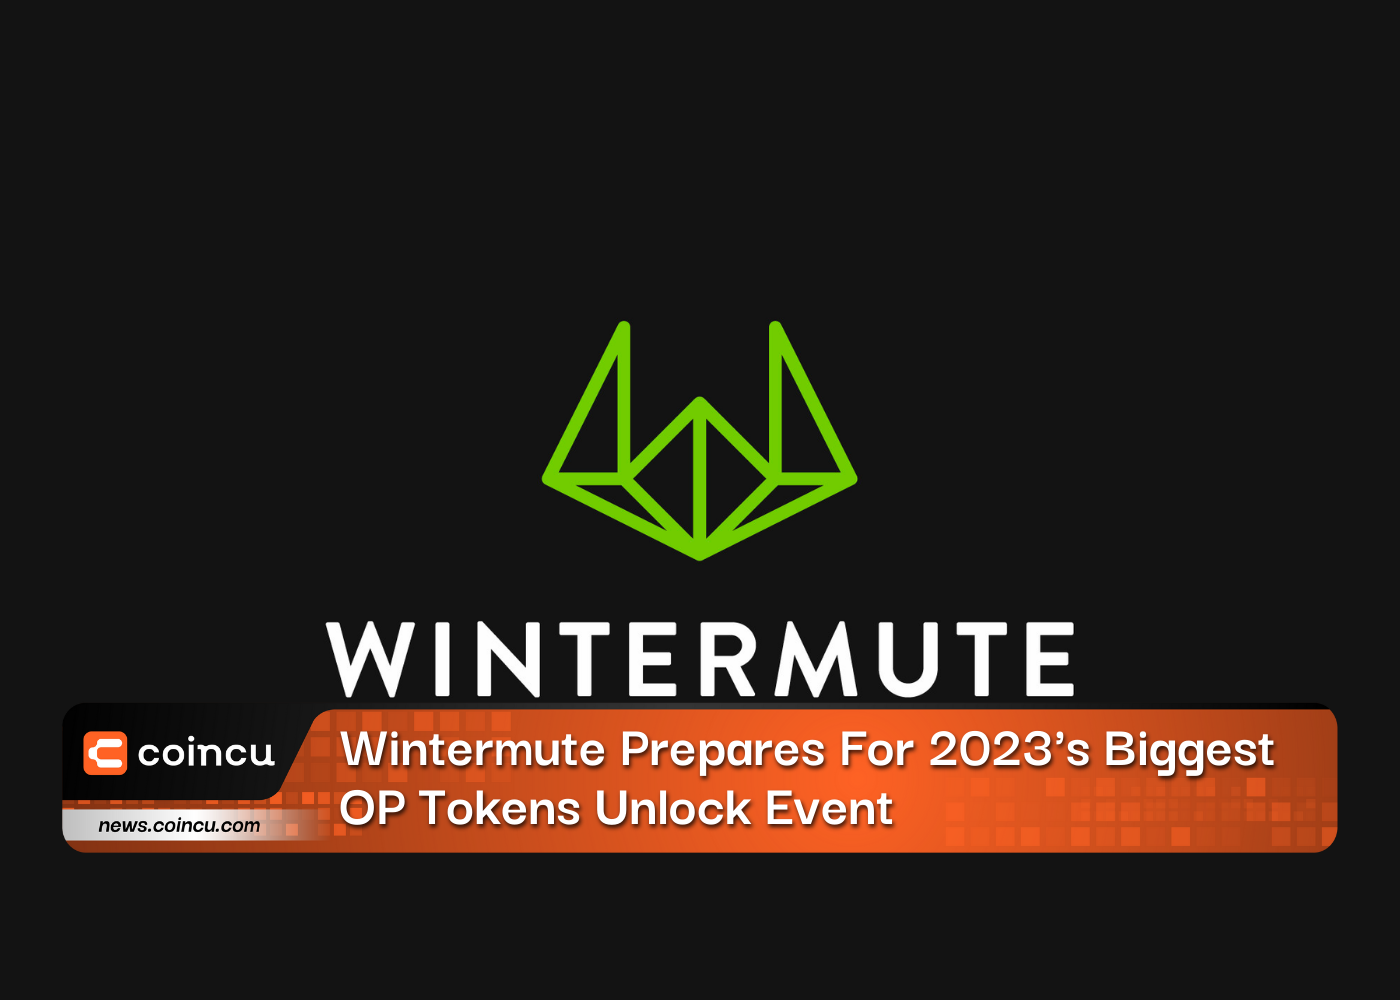 Wintermute Prepares For 2023's Biggest OP Tokens Unlock Event